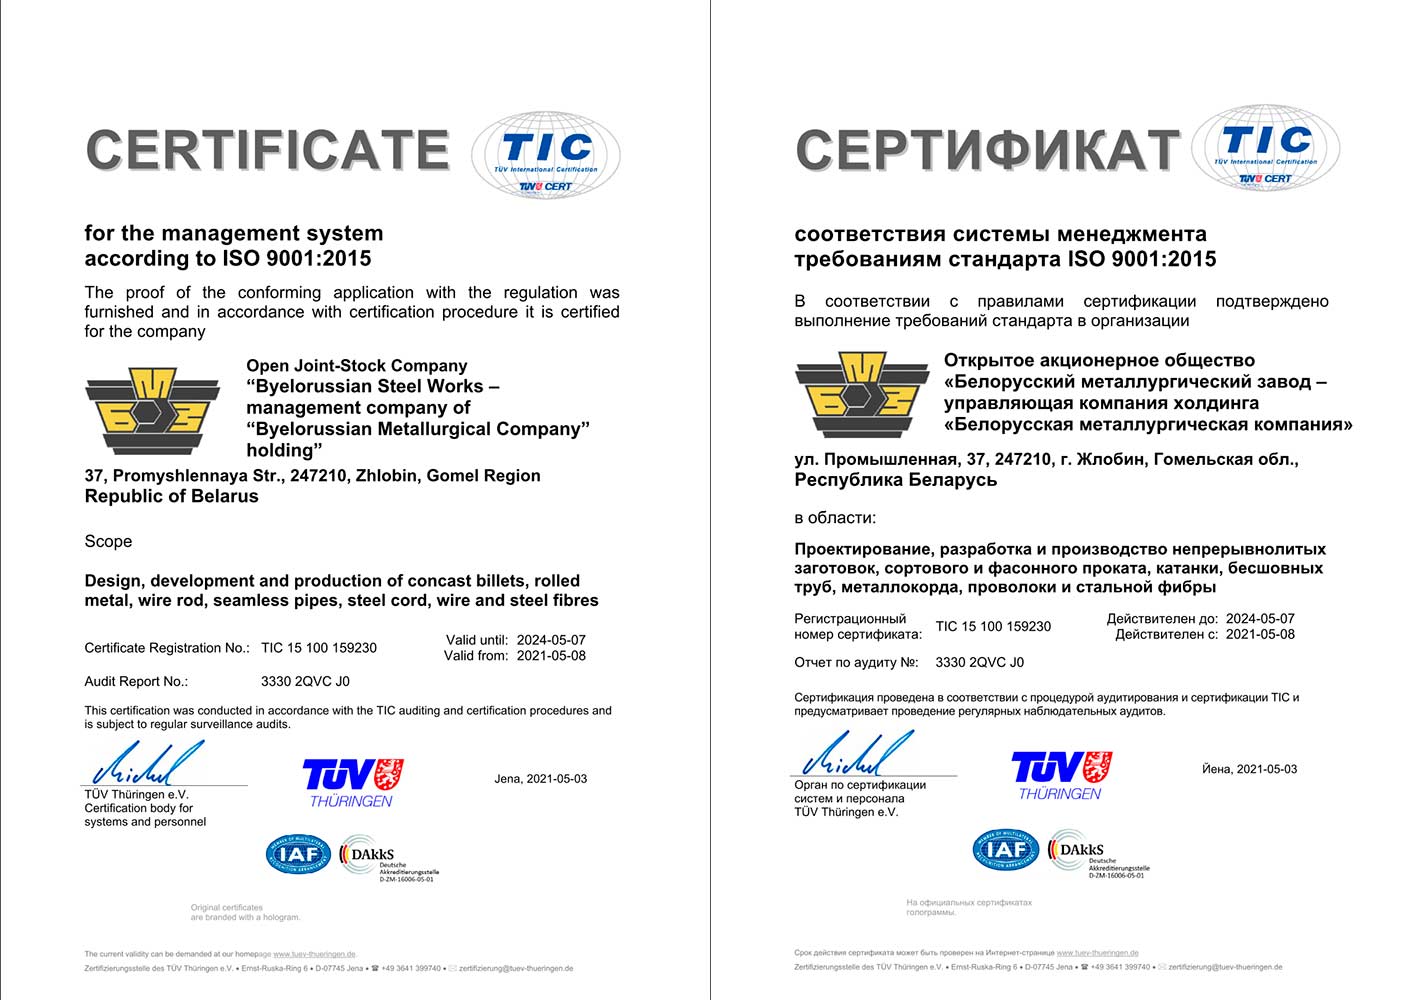 Сертификат соответствия СМК № TIC 15 100 159230 (TUV Thuringen e.V.) требованиям международного стандарта ISO 9001:2015 на проектирование, разработку и производство непрерывнолитых заготовок, сортового и фасонного проката, катанки, бесшовных труб, металлокорда, проволоки и стальной фибры.